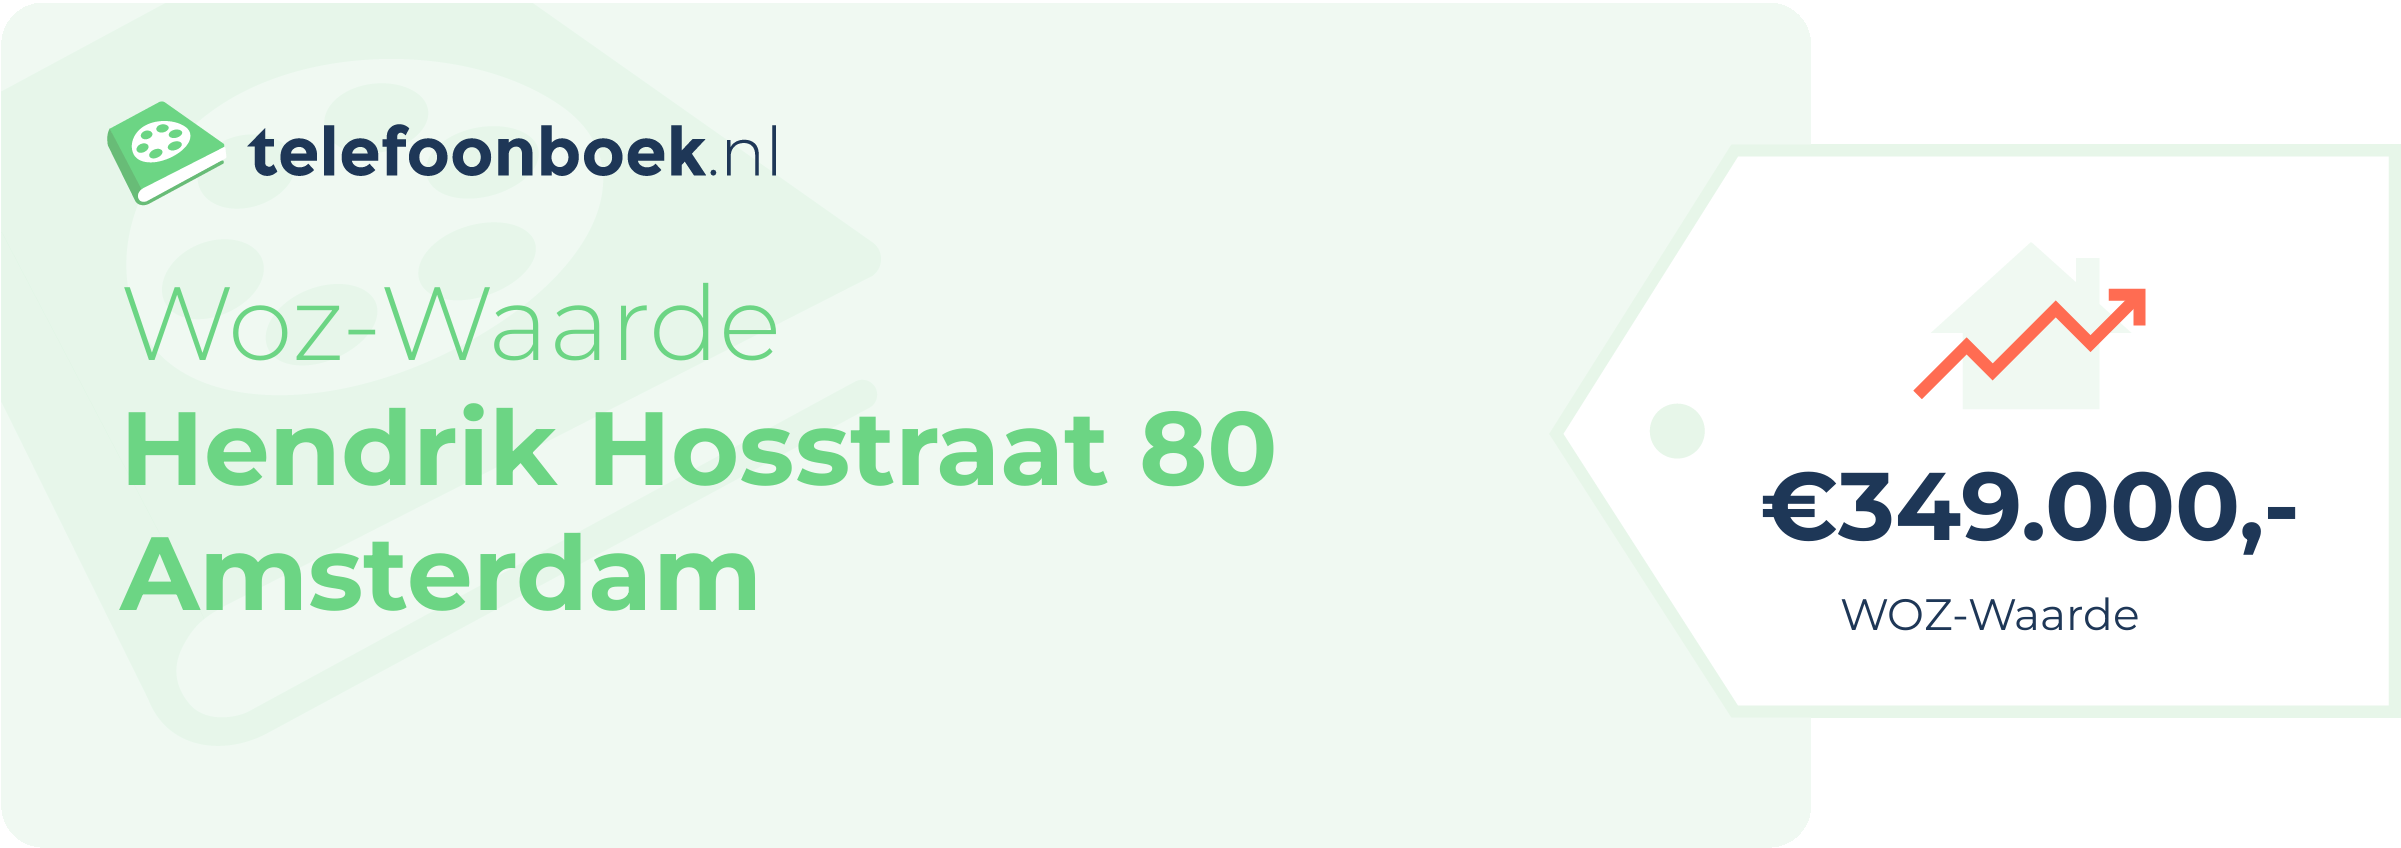 WOZ-waarde Hendrik Hosstraat 80 Amsterdam